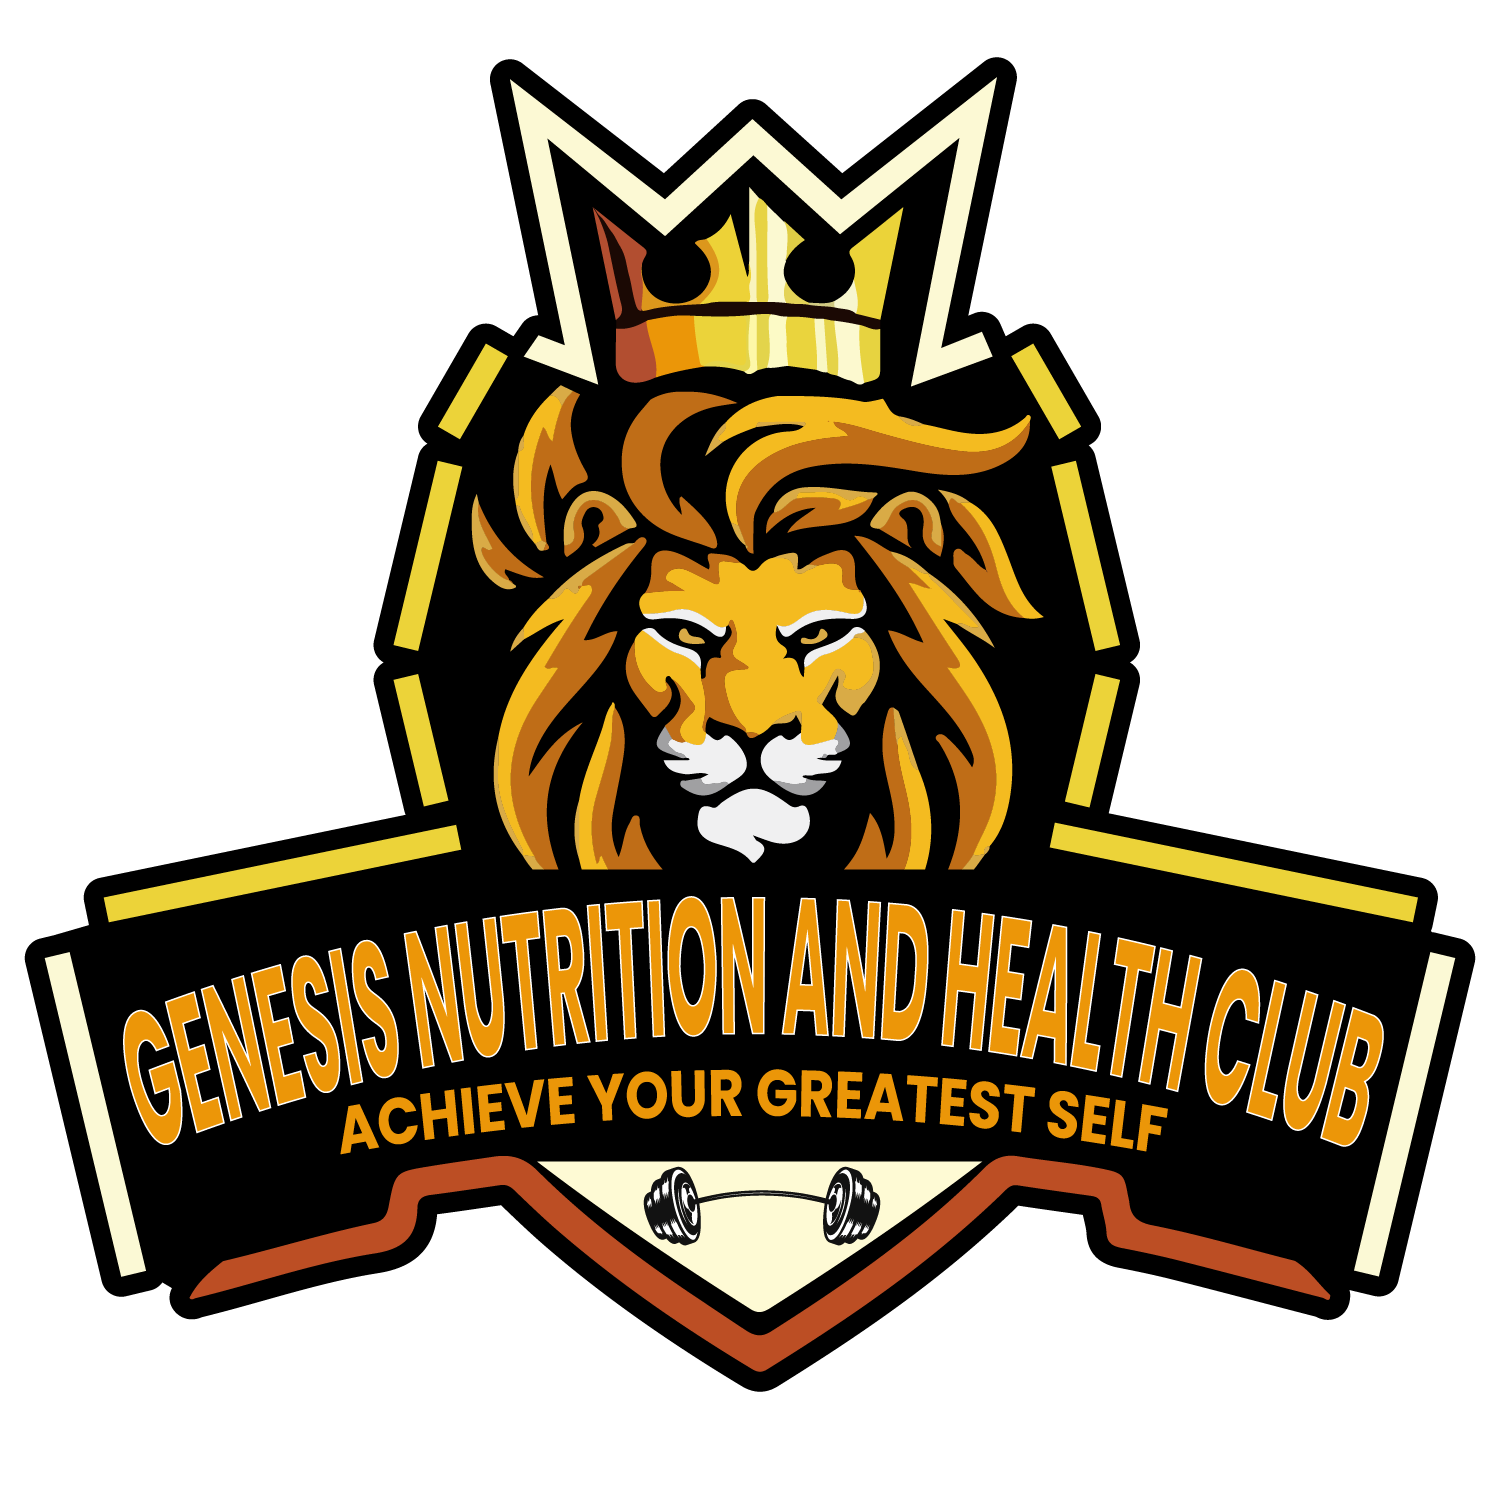 Genesis Nutrition and Health Club LLC